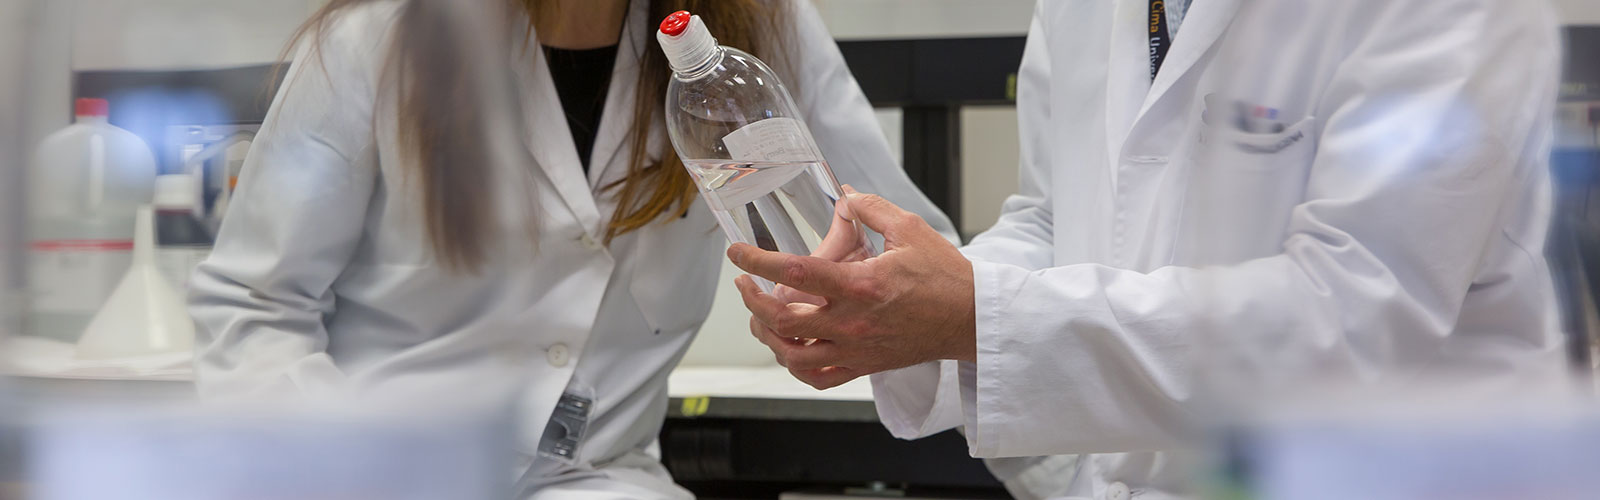 investgadores analizando el contenido líquido de un frasco, en el Cima Universidad de Navarra